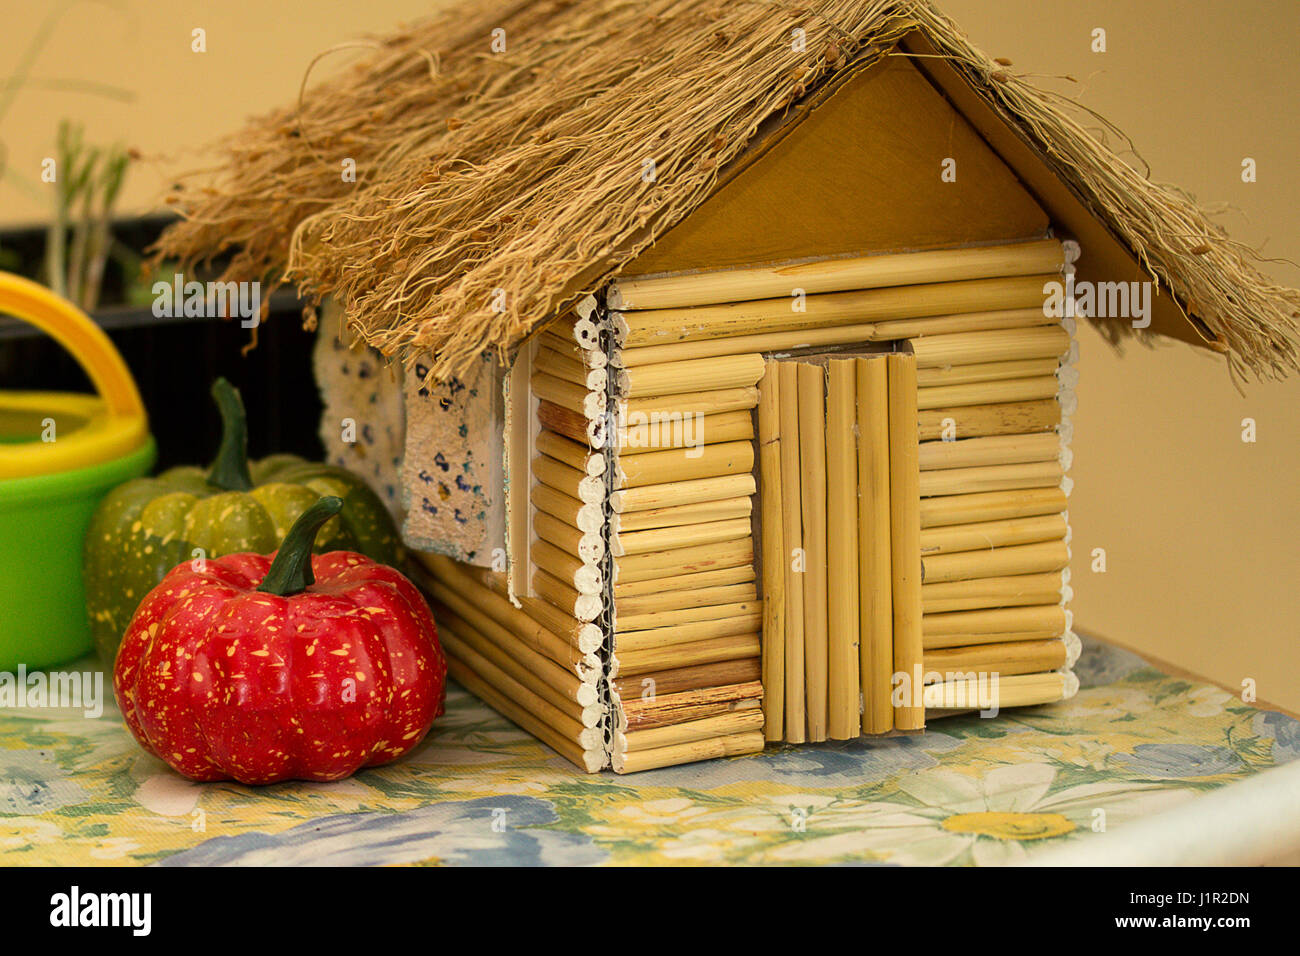 Un petit jouet maison faite de brindilles de bois Photo Stock - Alamy